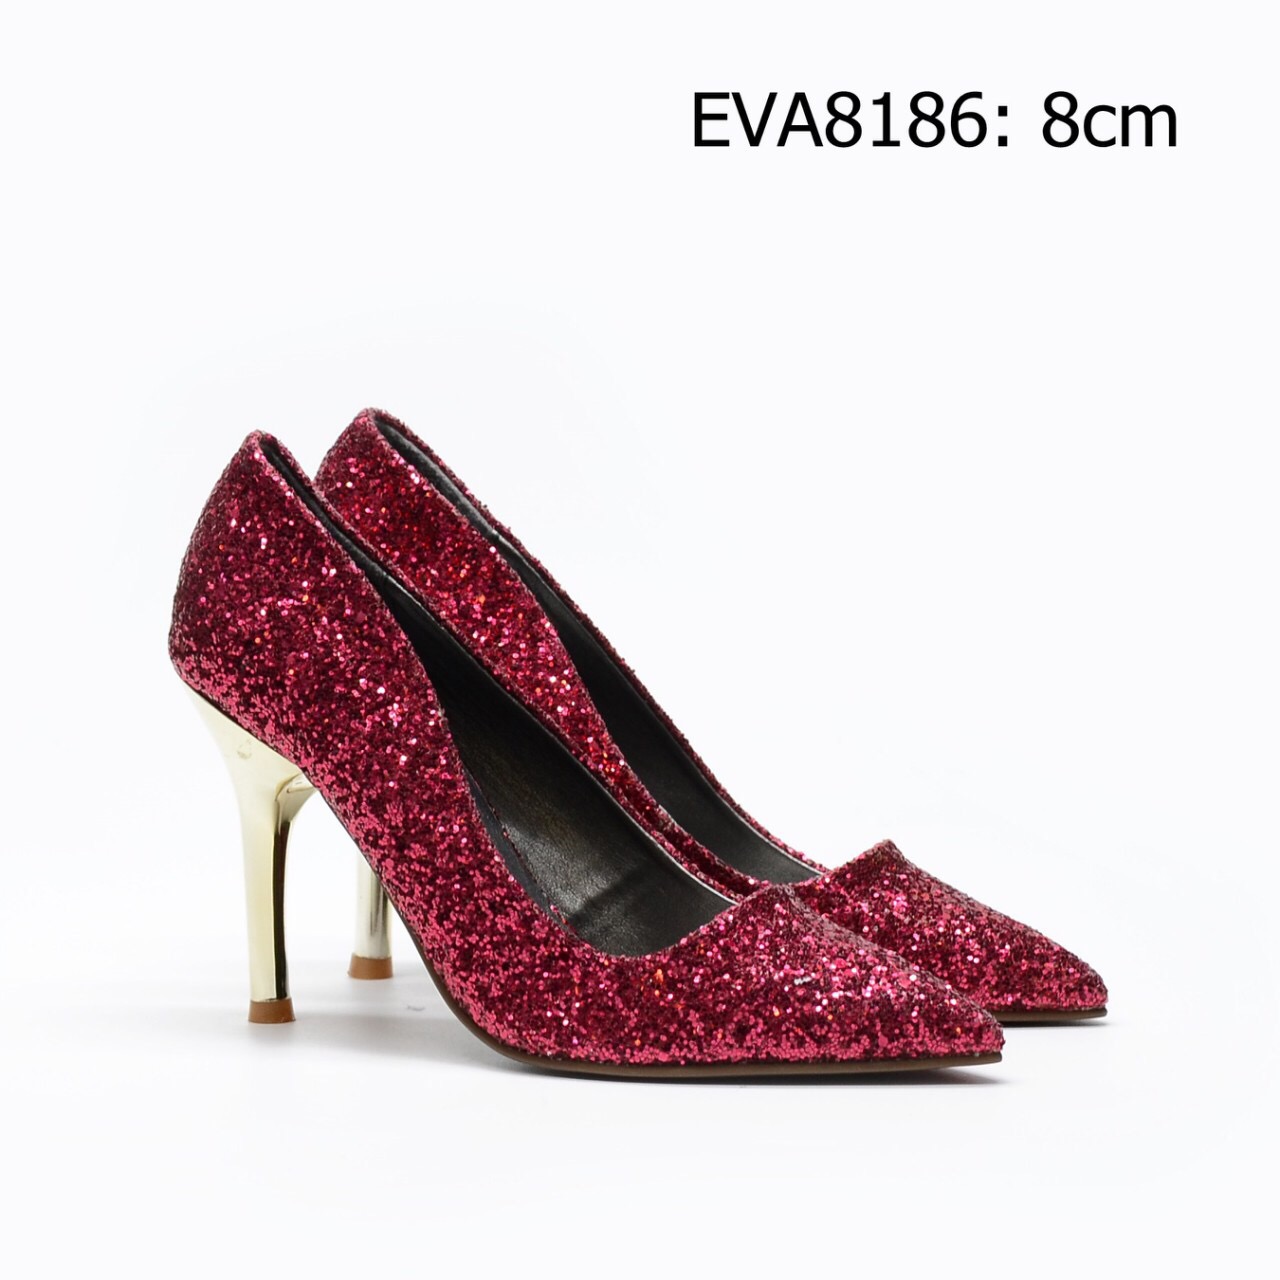 Giày cao gót ánh kim EVA8186 thiết kế tinh tế tạo nét đẹp thanh thoát